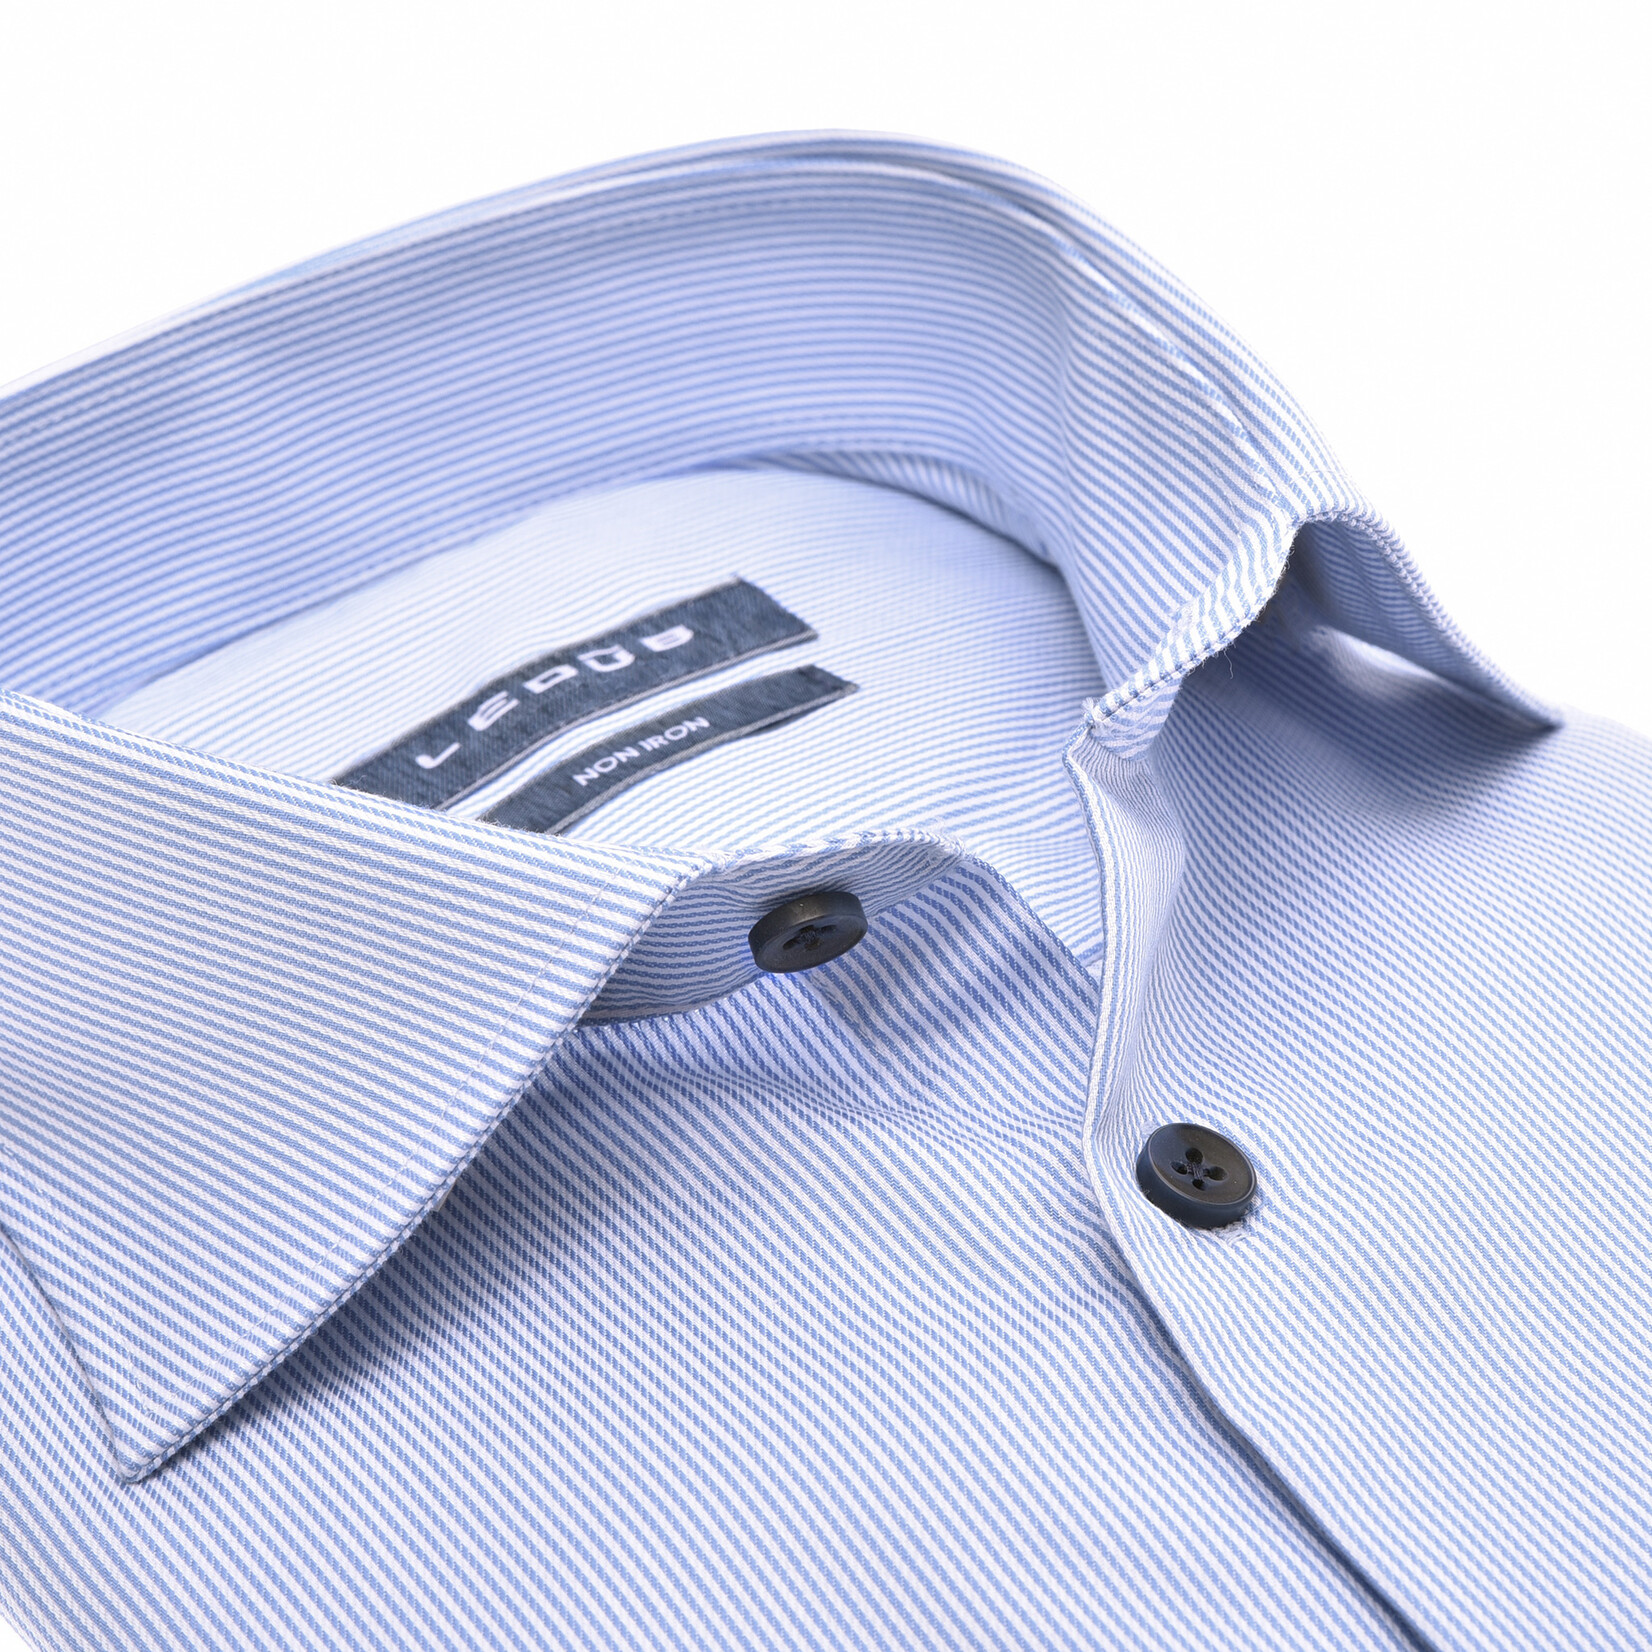 Ledûb modern fit overhemd lichtblauw streepje